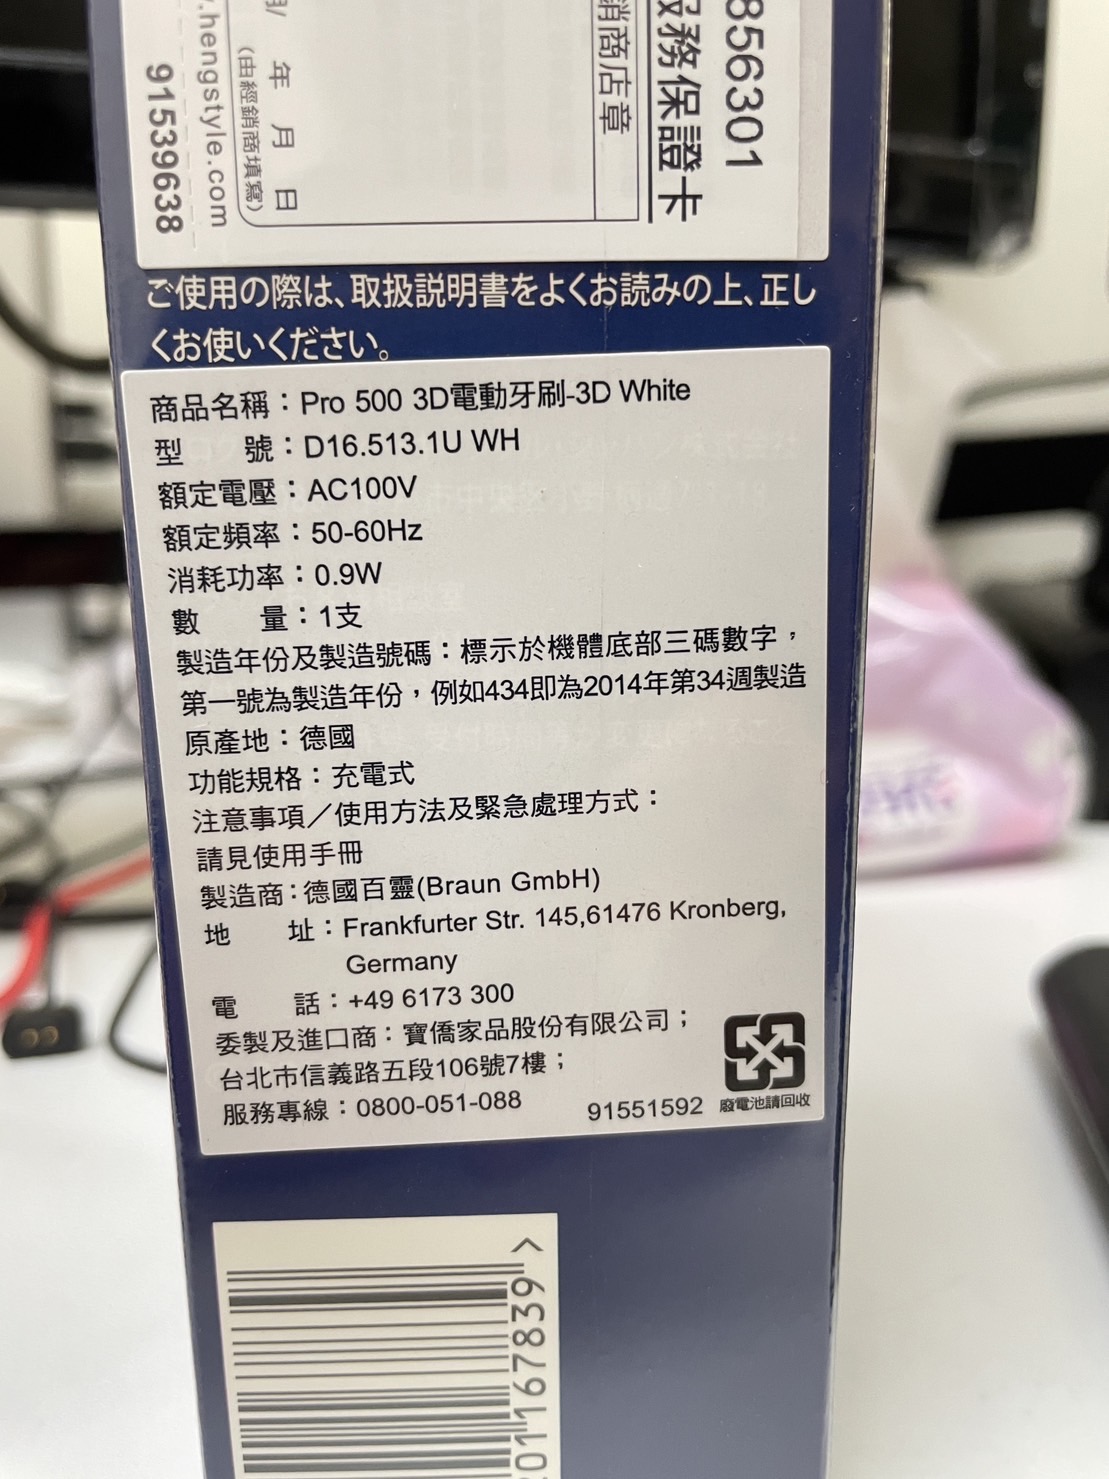 [商業]德國百靈Oral-B全新亮白3D電動牙刷PRO500